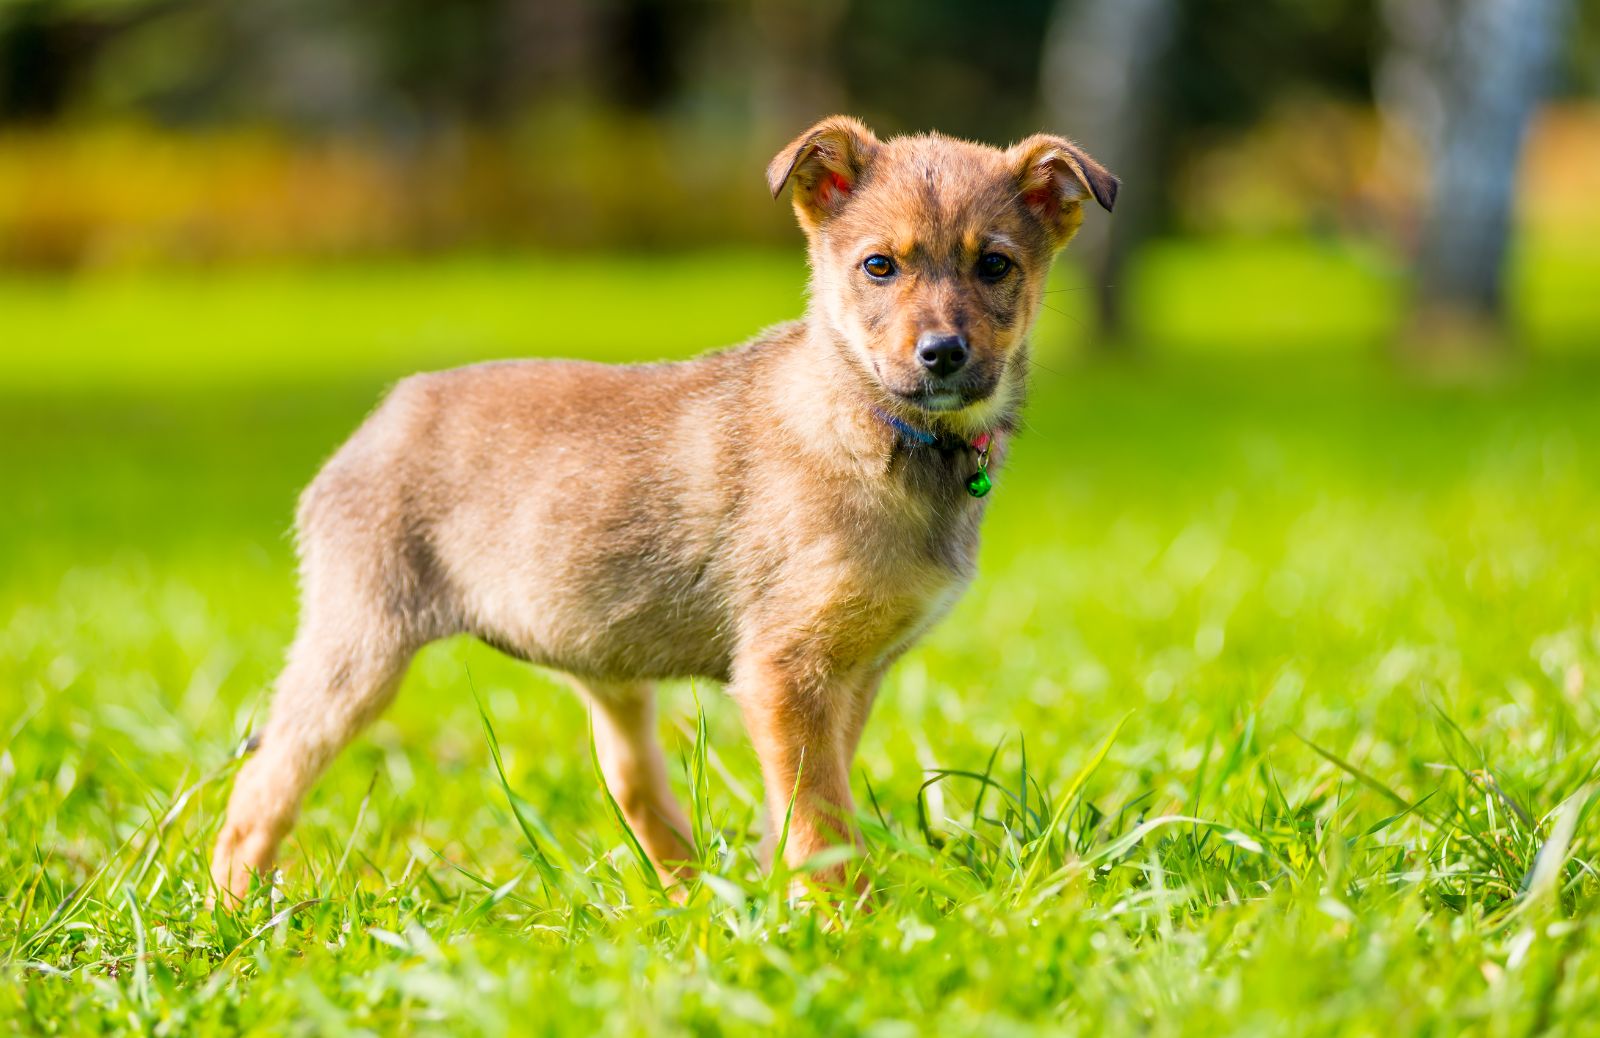 Perché i forasacchi sono pericolosi per i cani?